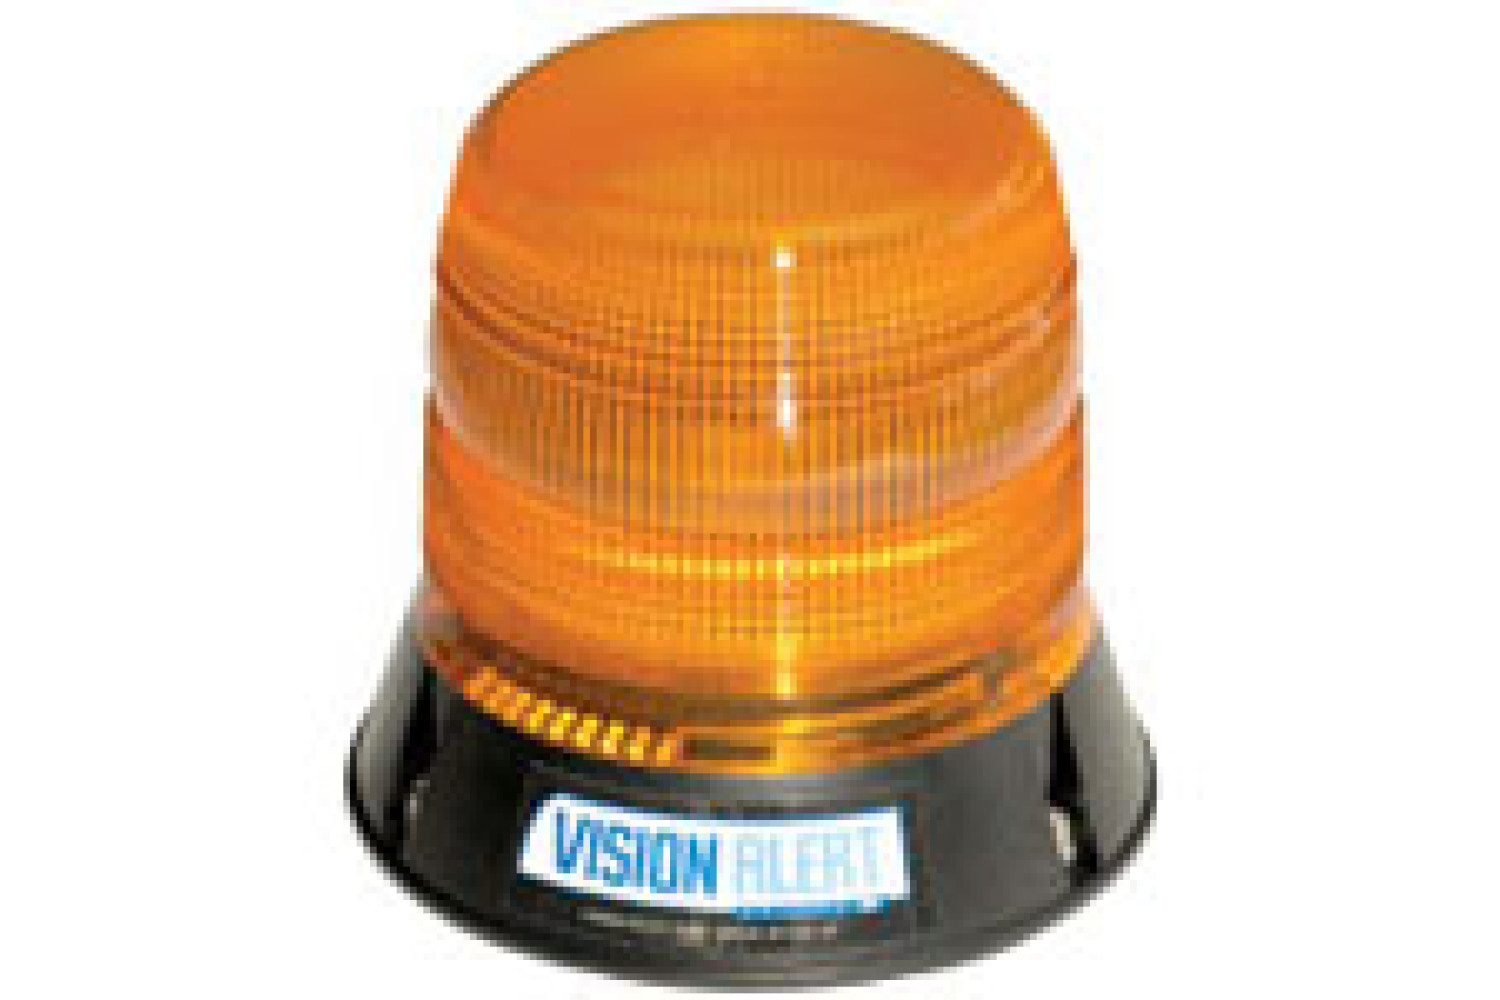 Vision Alert 1 Bolt 10-48v Amber LED Beacon